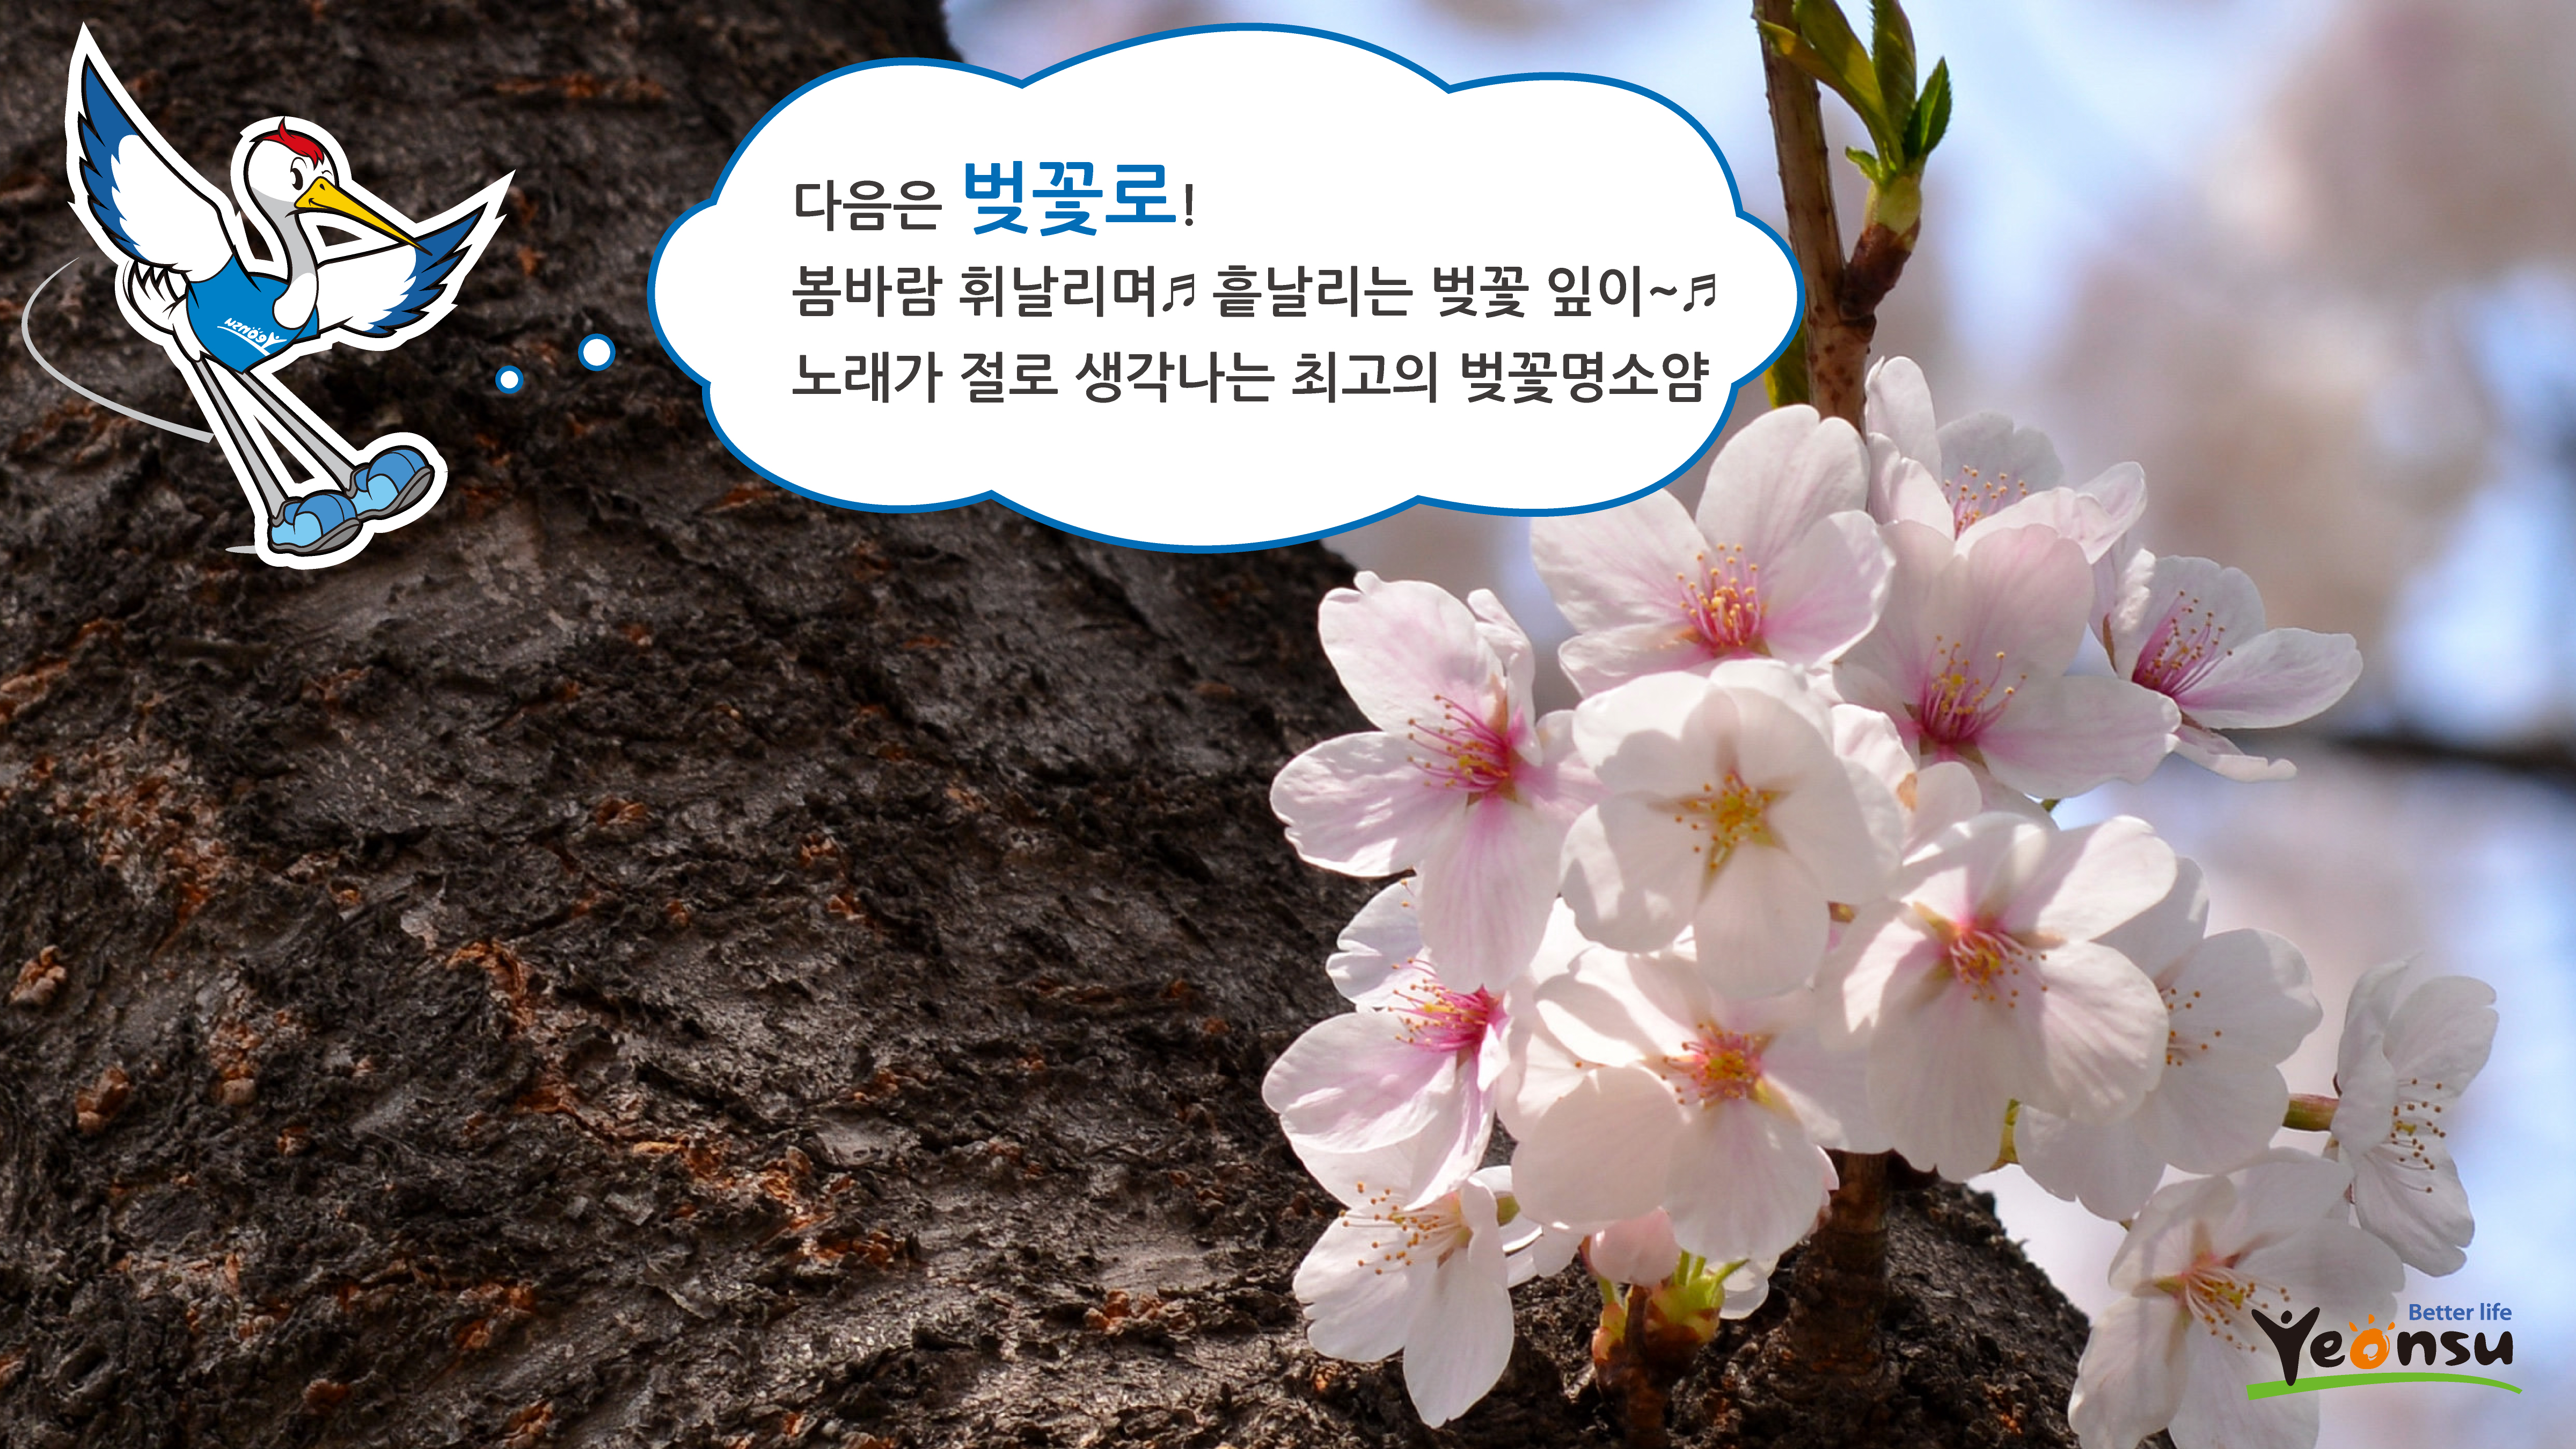 다음은 벚꽃로 ! 
봄바람 휘날리며! 흩날리는 벚꽃 잎이~
노래가 절로 생각나는 최고의 벚꽃명소얌
Better life Yeonsu